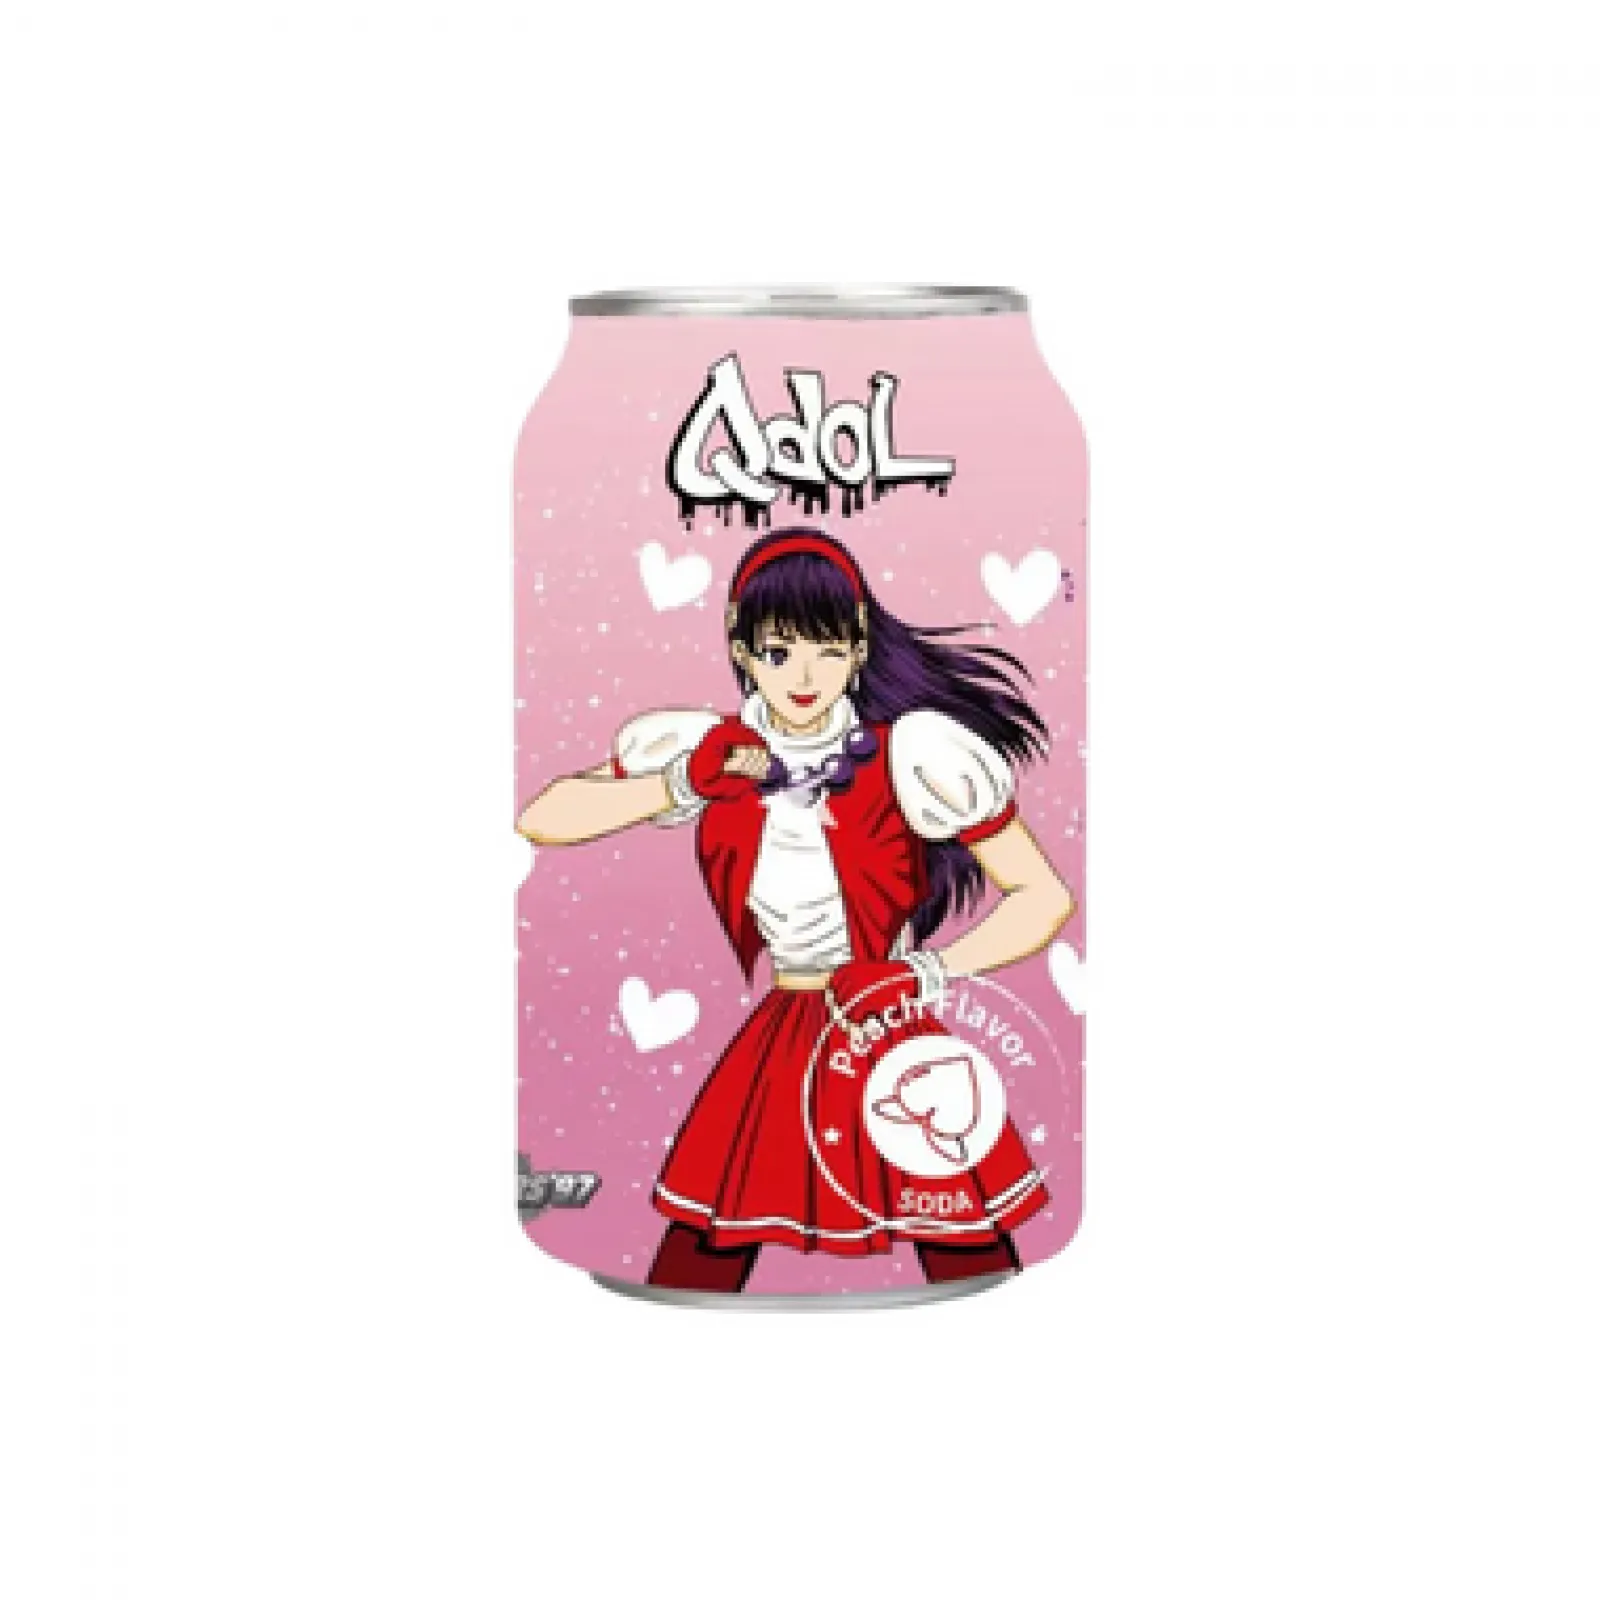 Korean Soda Can Anime Girl by Tigersensei on DeviantArt